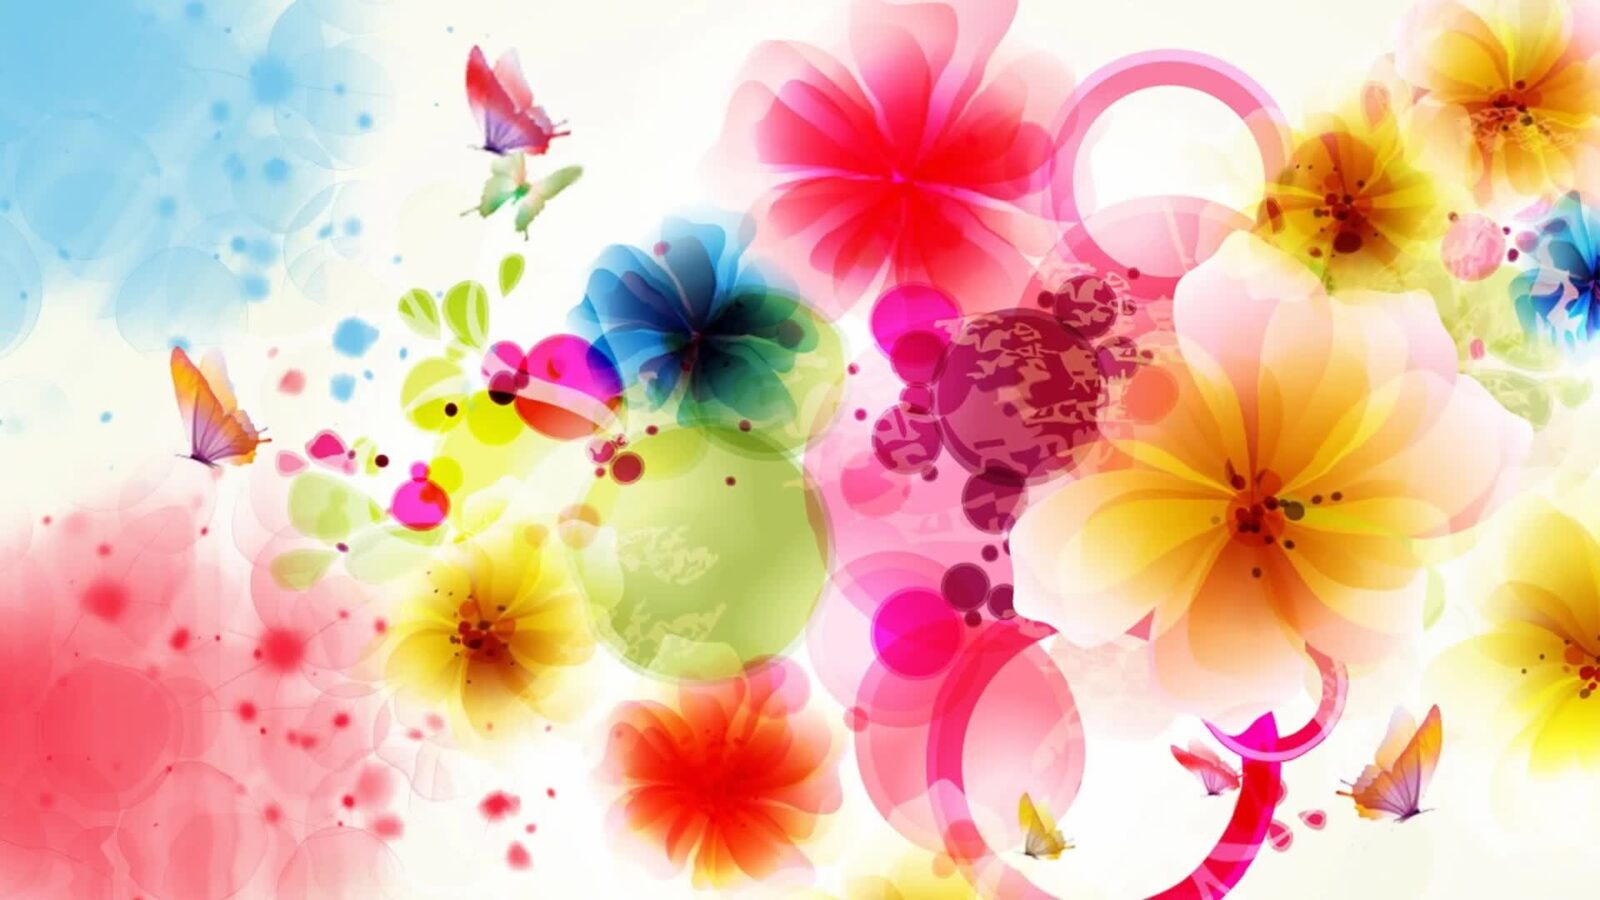 Flowers And Butterflies - Abstract Desktop Wallpaper